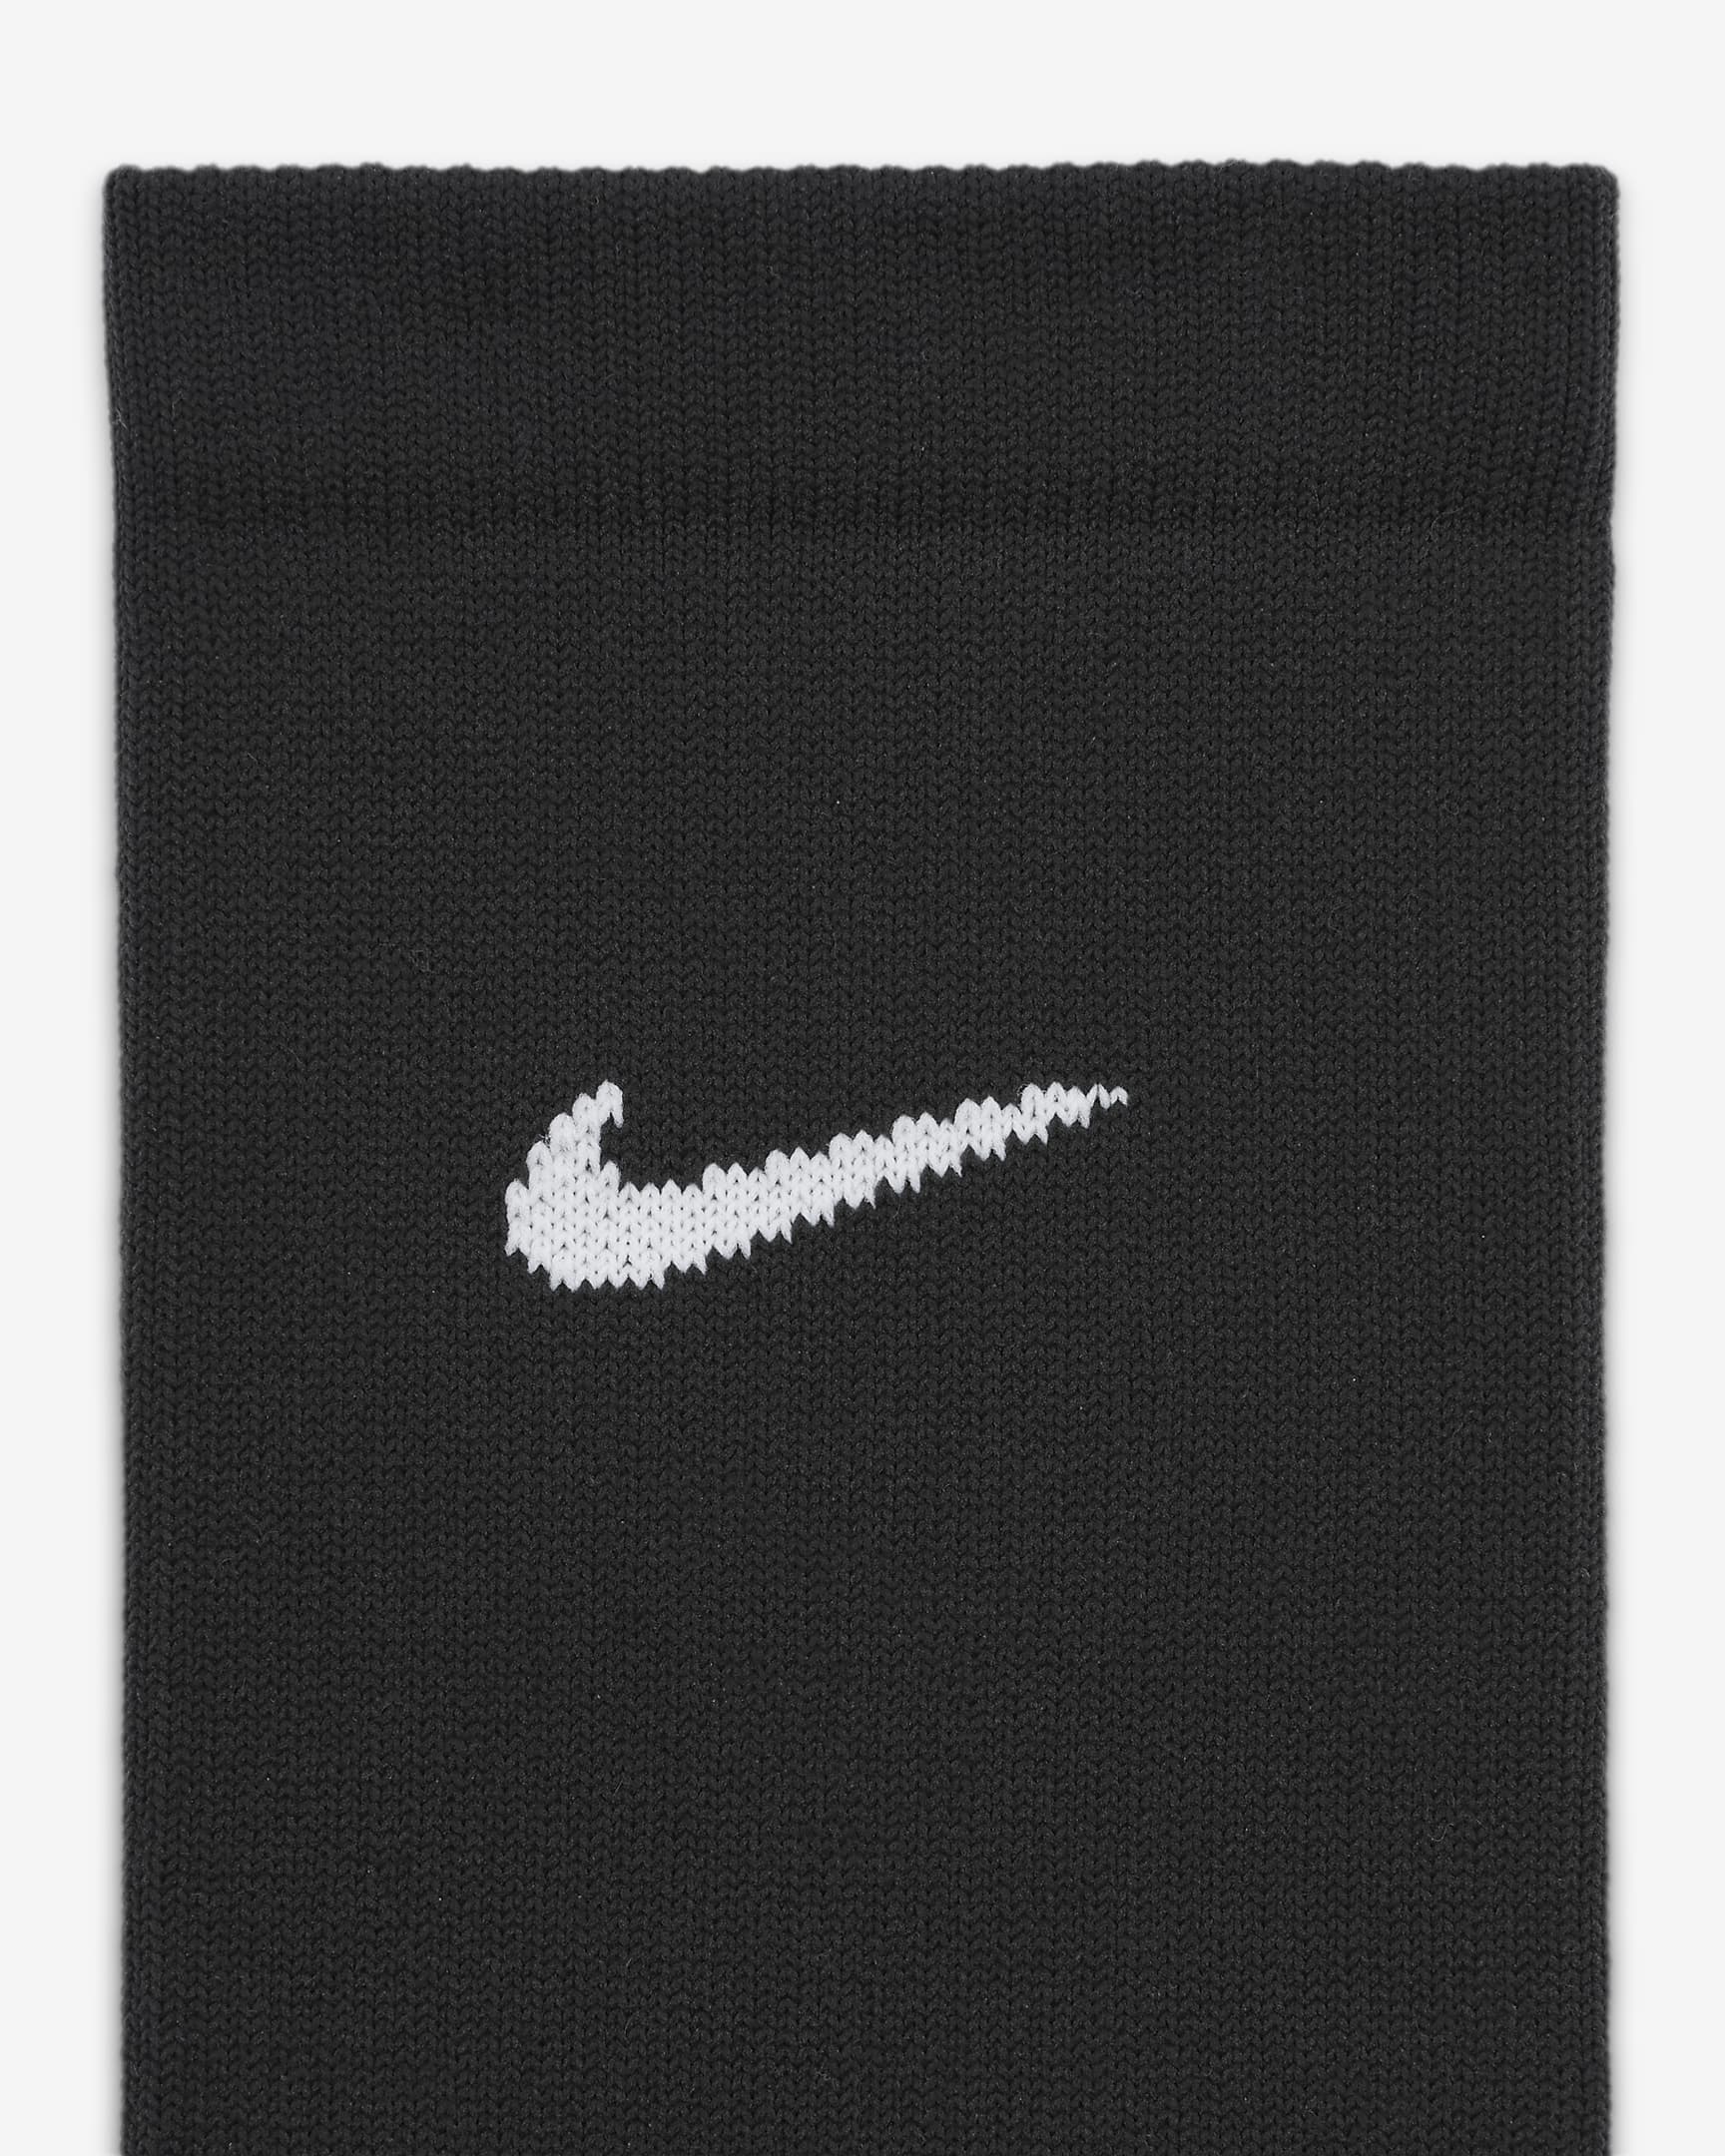 Nike Strike Football Crew Socks. Nike ID